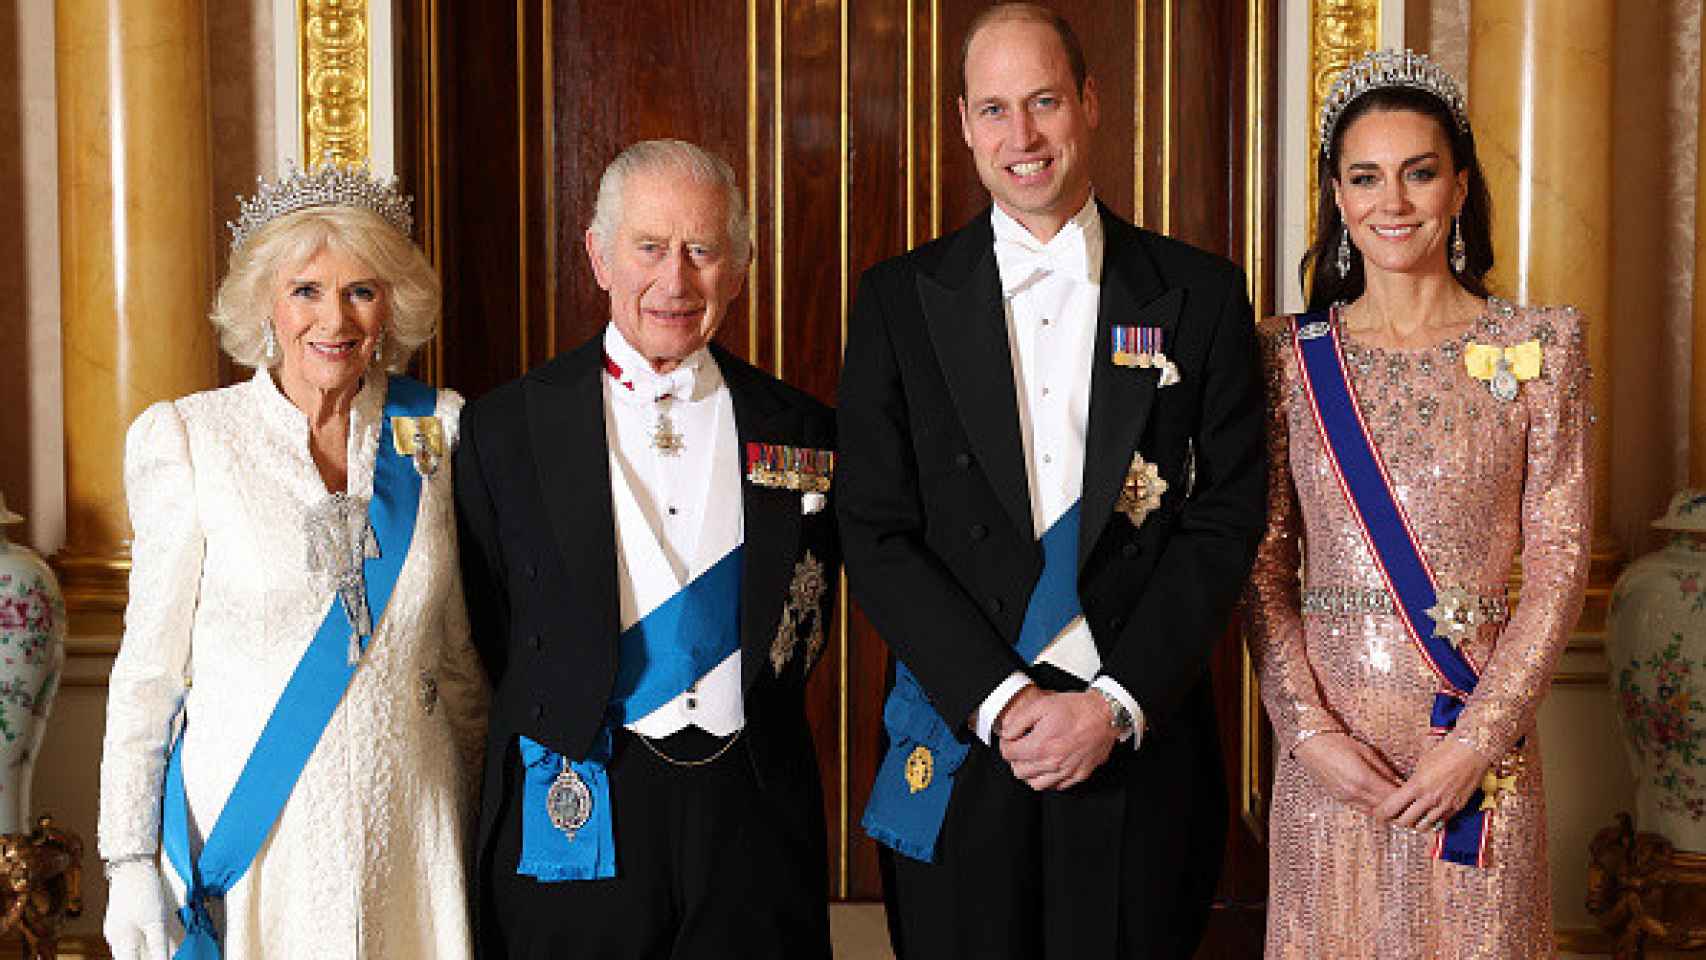 Sus Majestades los Reyes de Inglaterra y los príncipes de Gales en la tradicional cena de recepción diplomática.